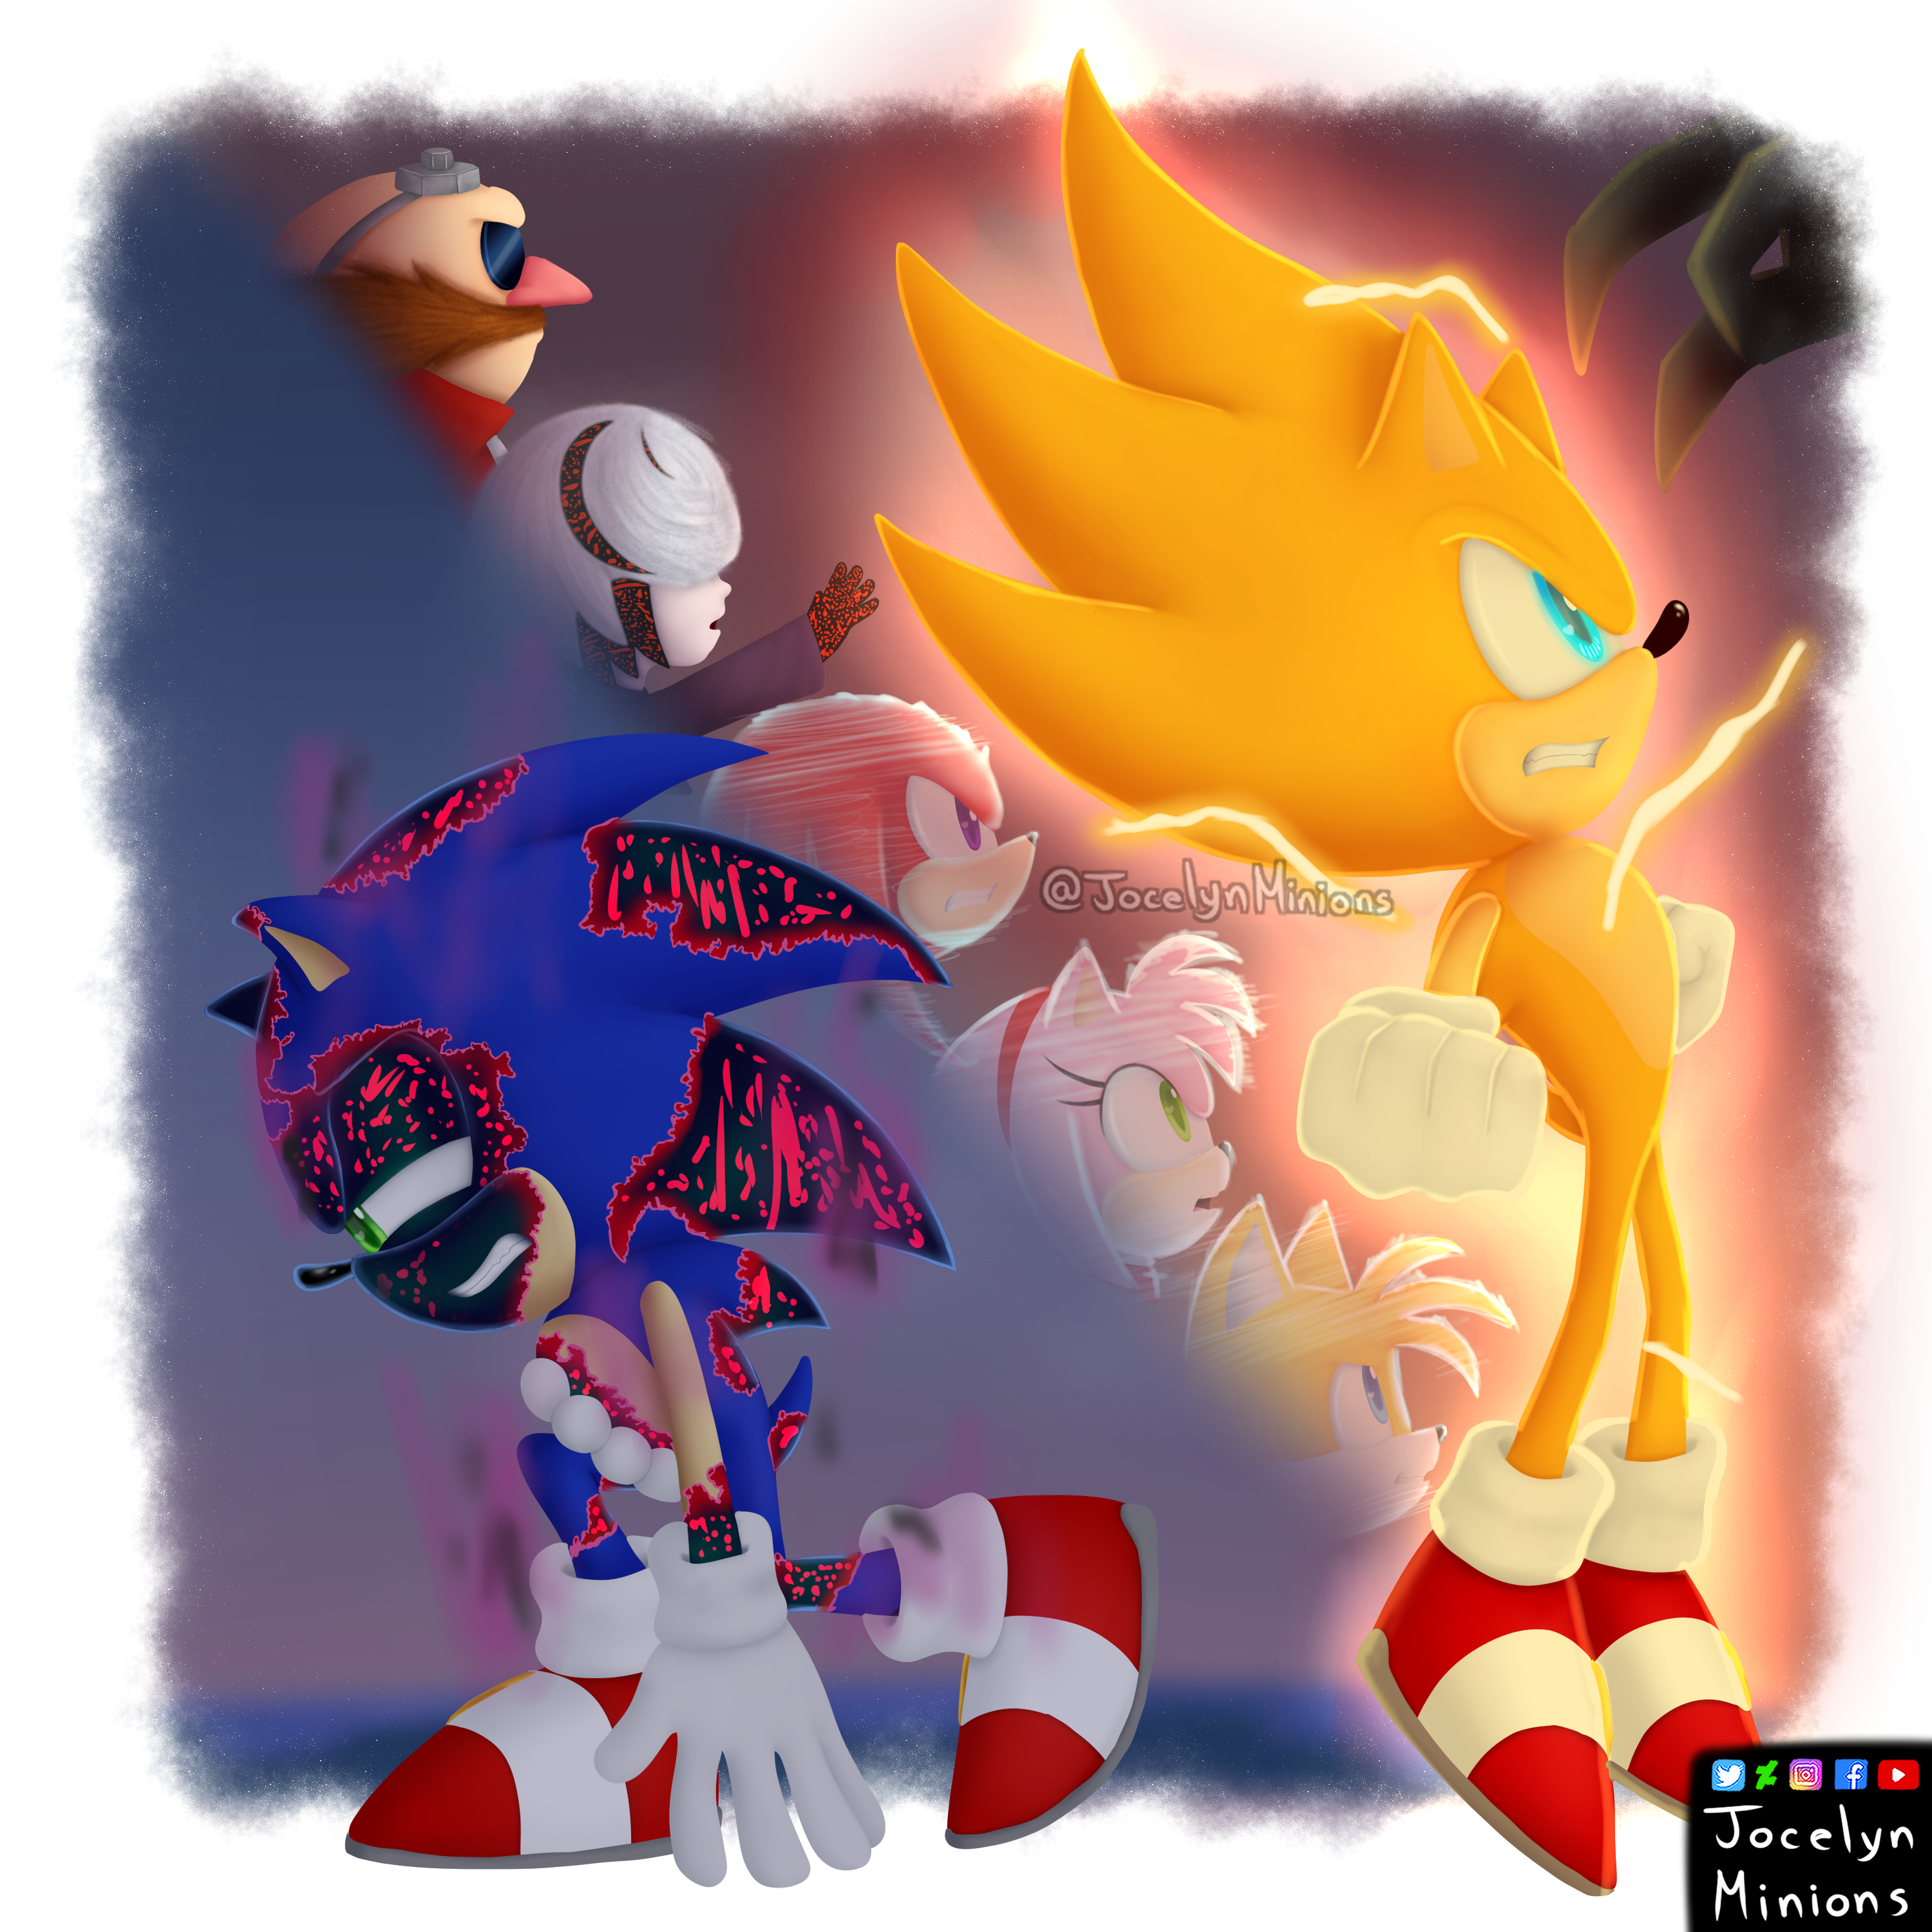 Final Showdown (Sonic Frontiers FanArt) by MIGHTY-TESLA on DeviantArt